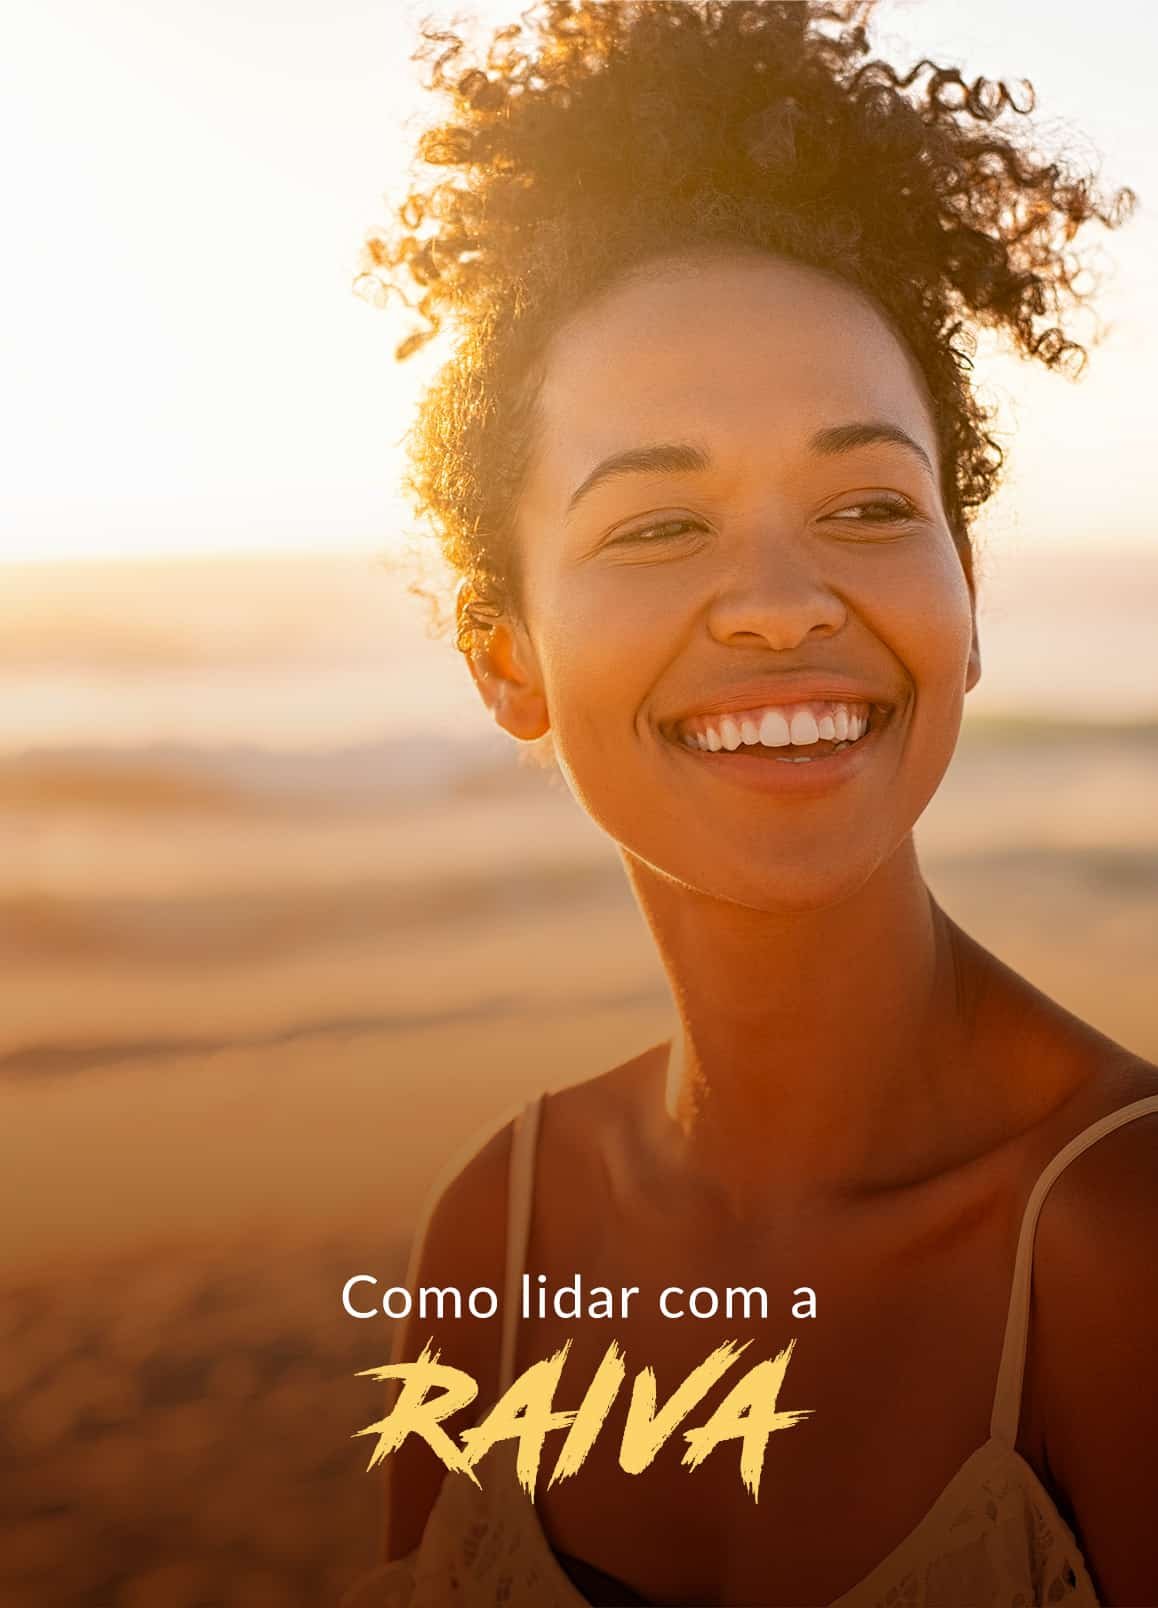 Mulher negra com sorriso no rosto. Ao fundo há uma praia com o por do sol.